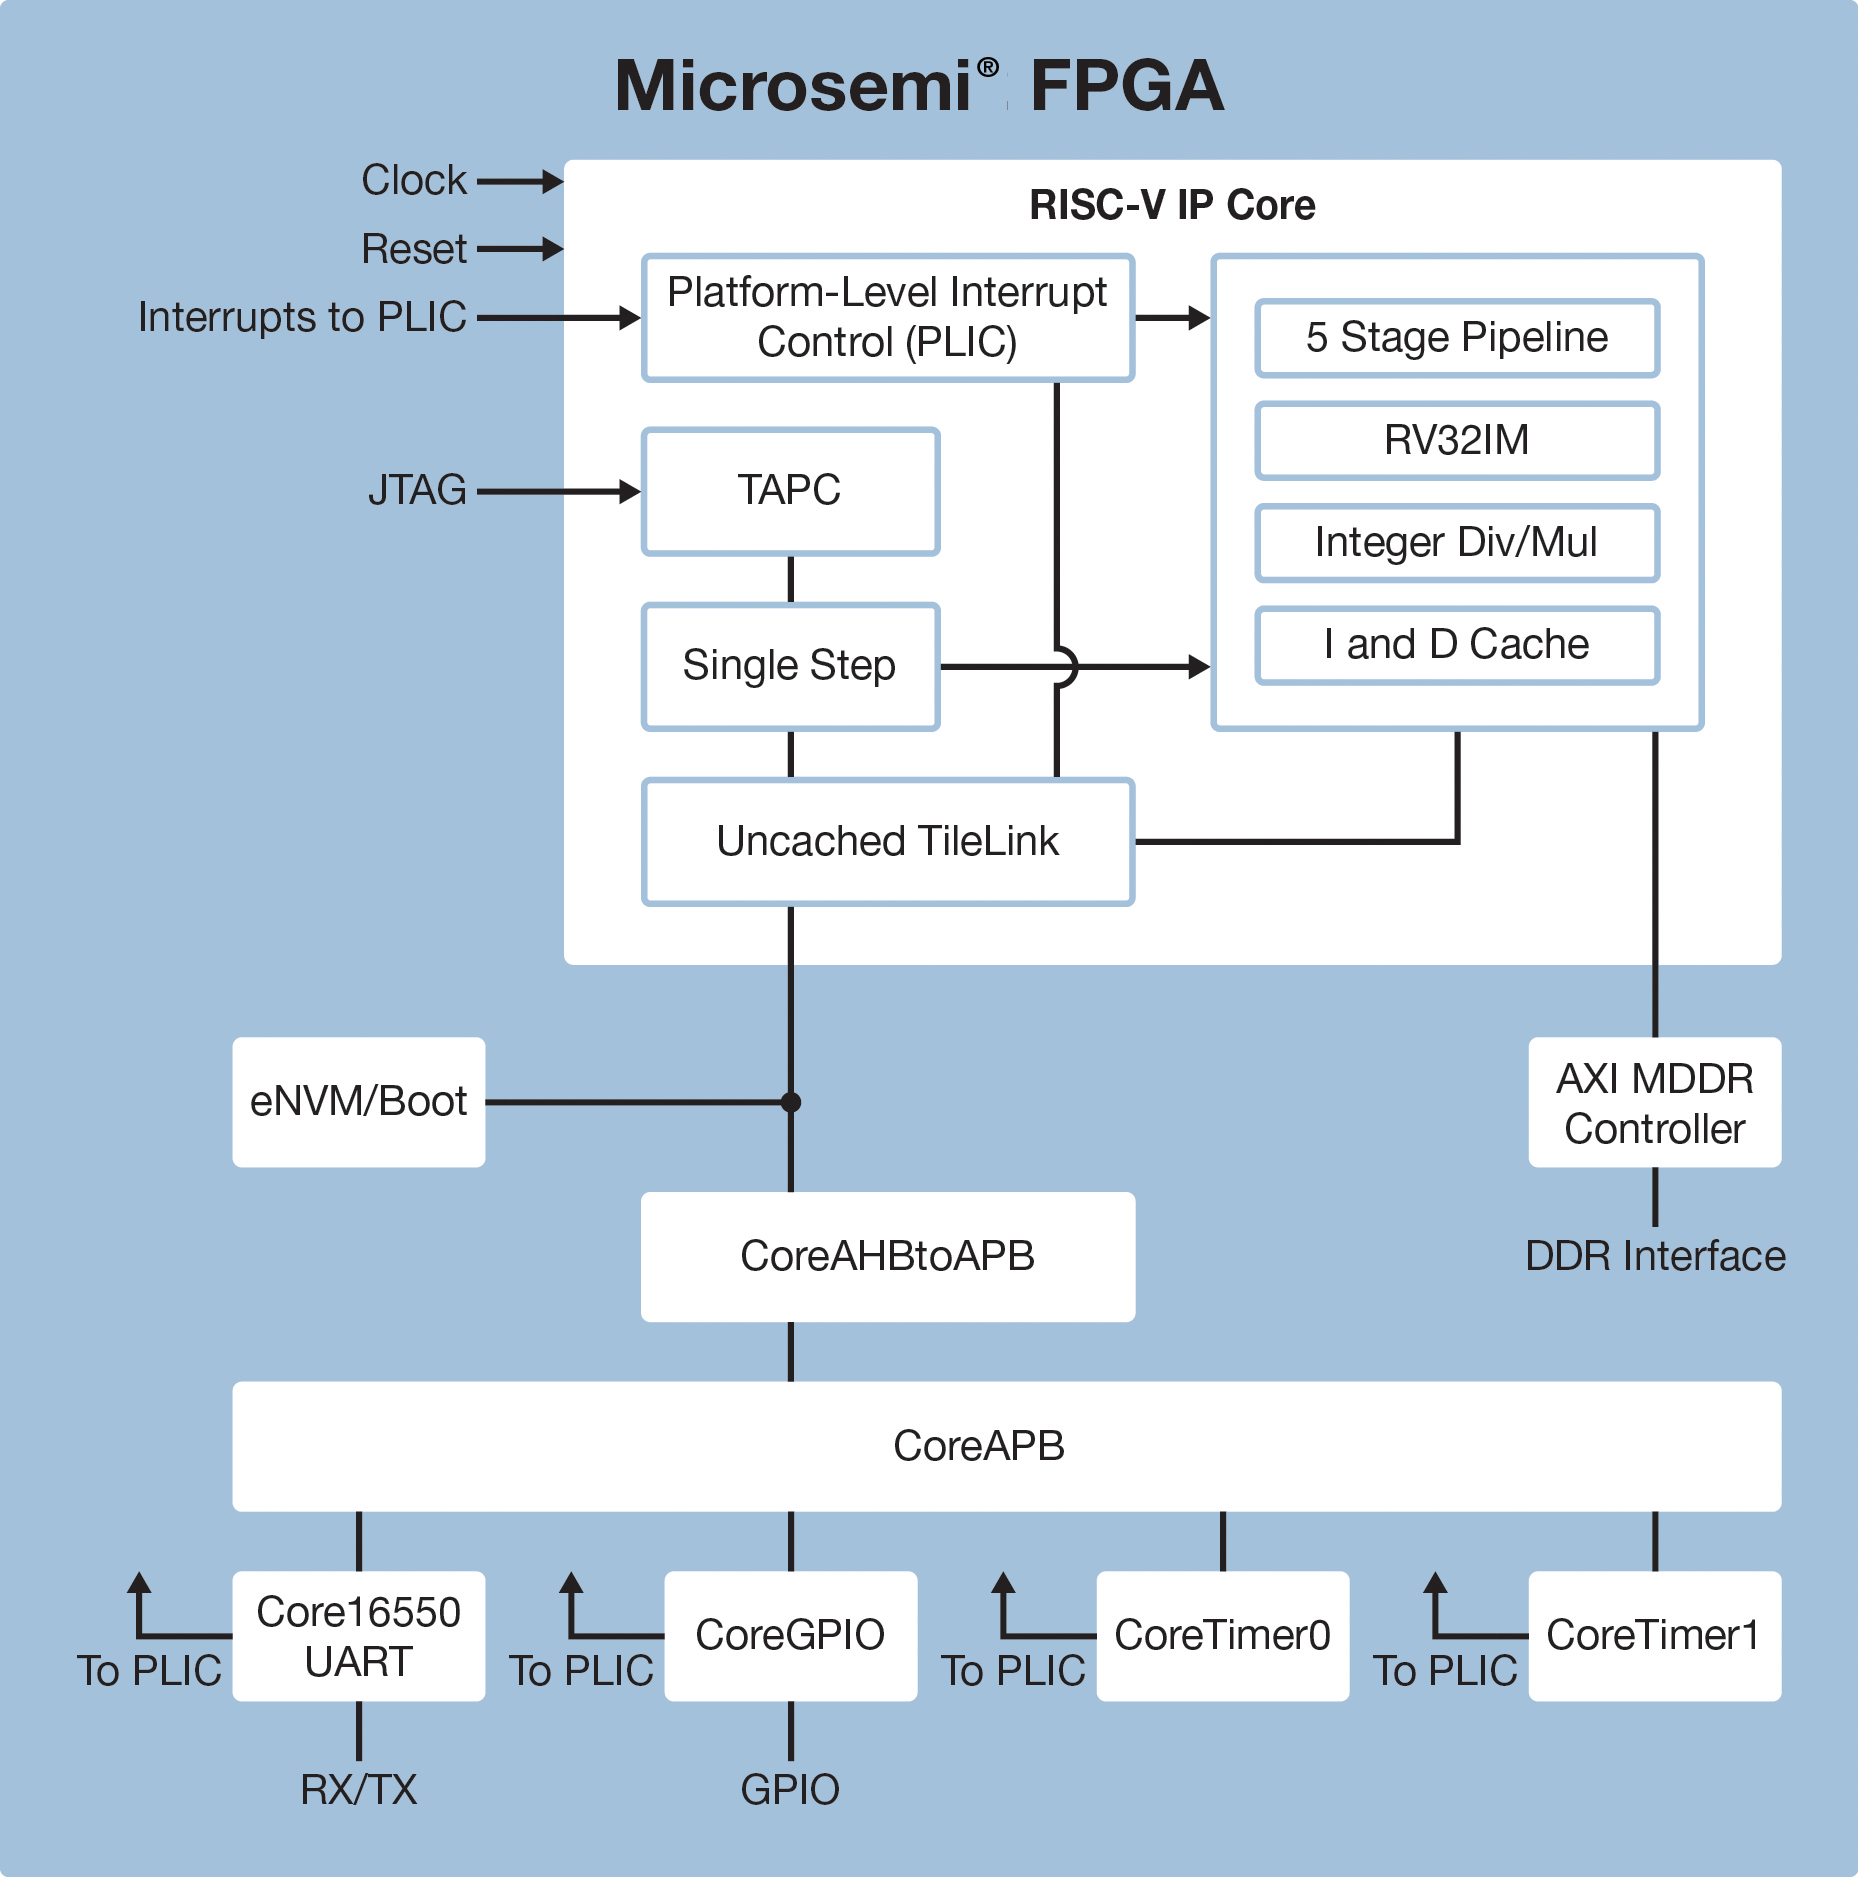 RISC-V IP Core, RISC-V Processor 